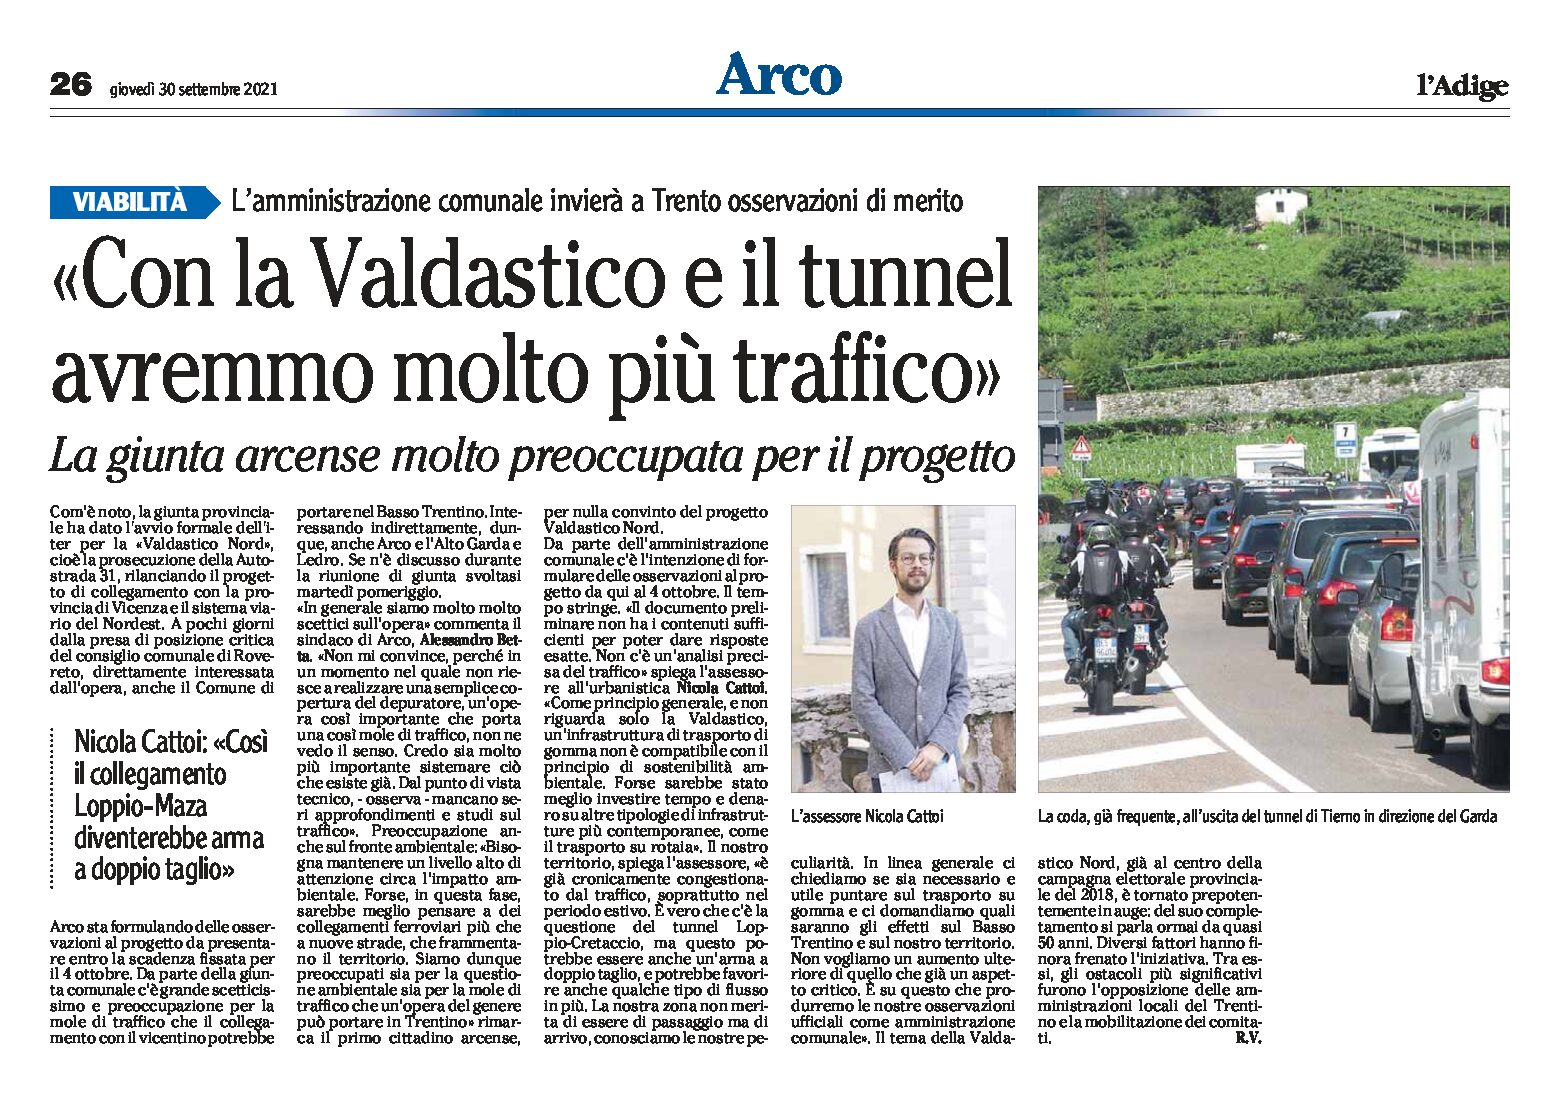 Arco, viabilità: con la Valdastico e il tunnel avremmo molto più traffico